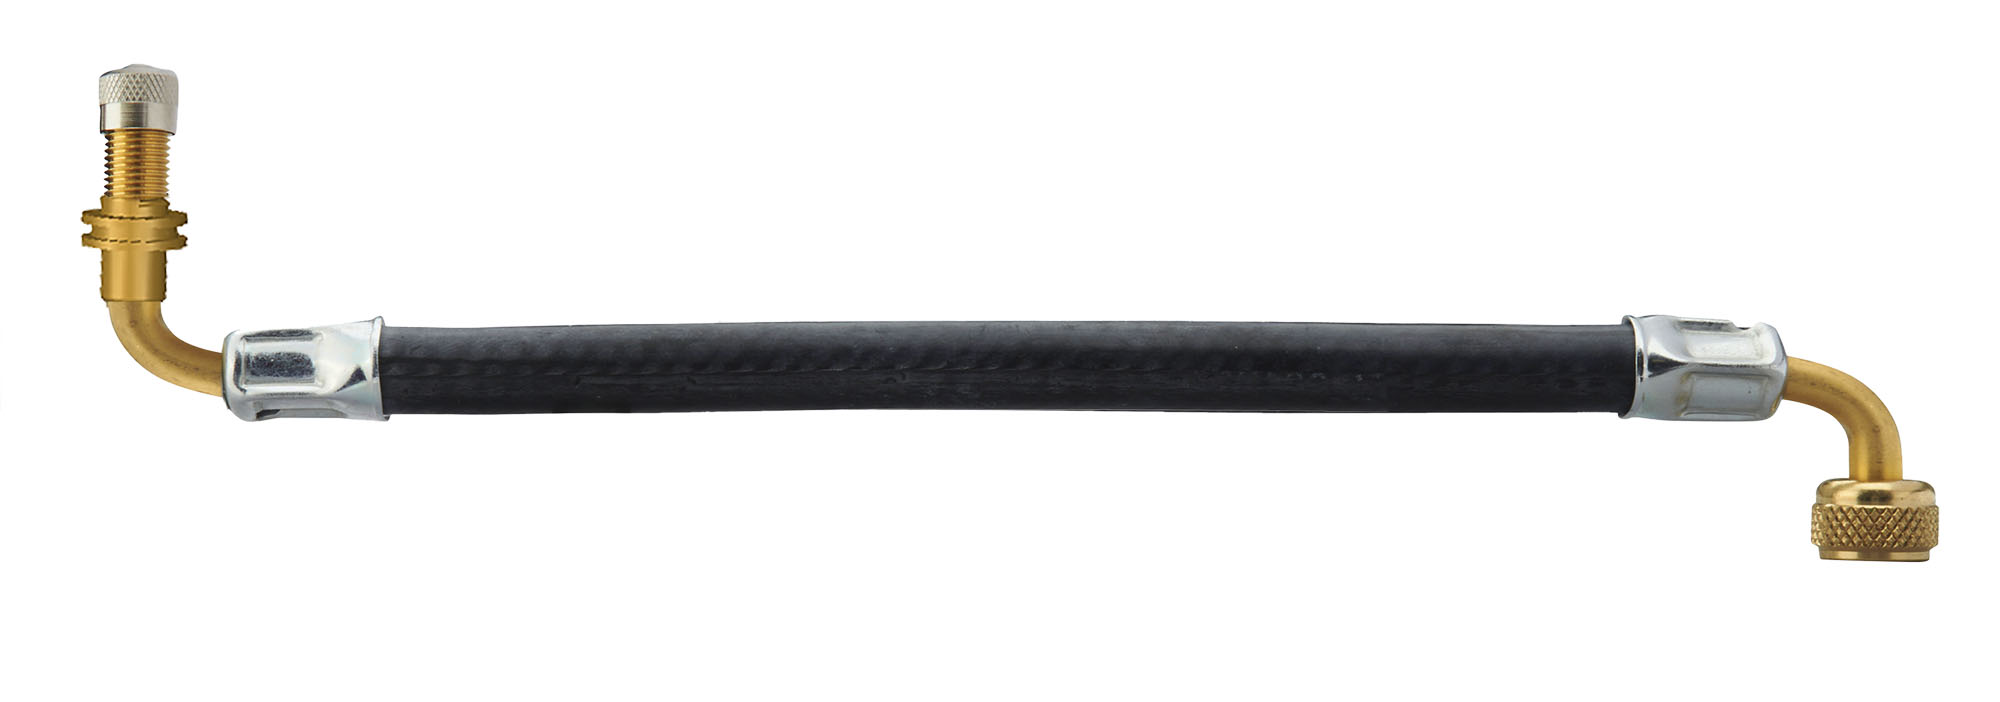 Alligator-Ventilverlängerung - gewinkelt 2×90°, 340 mm-9-336507